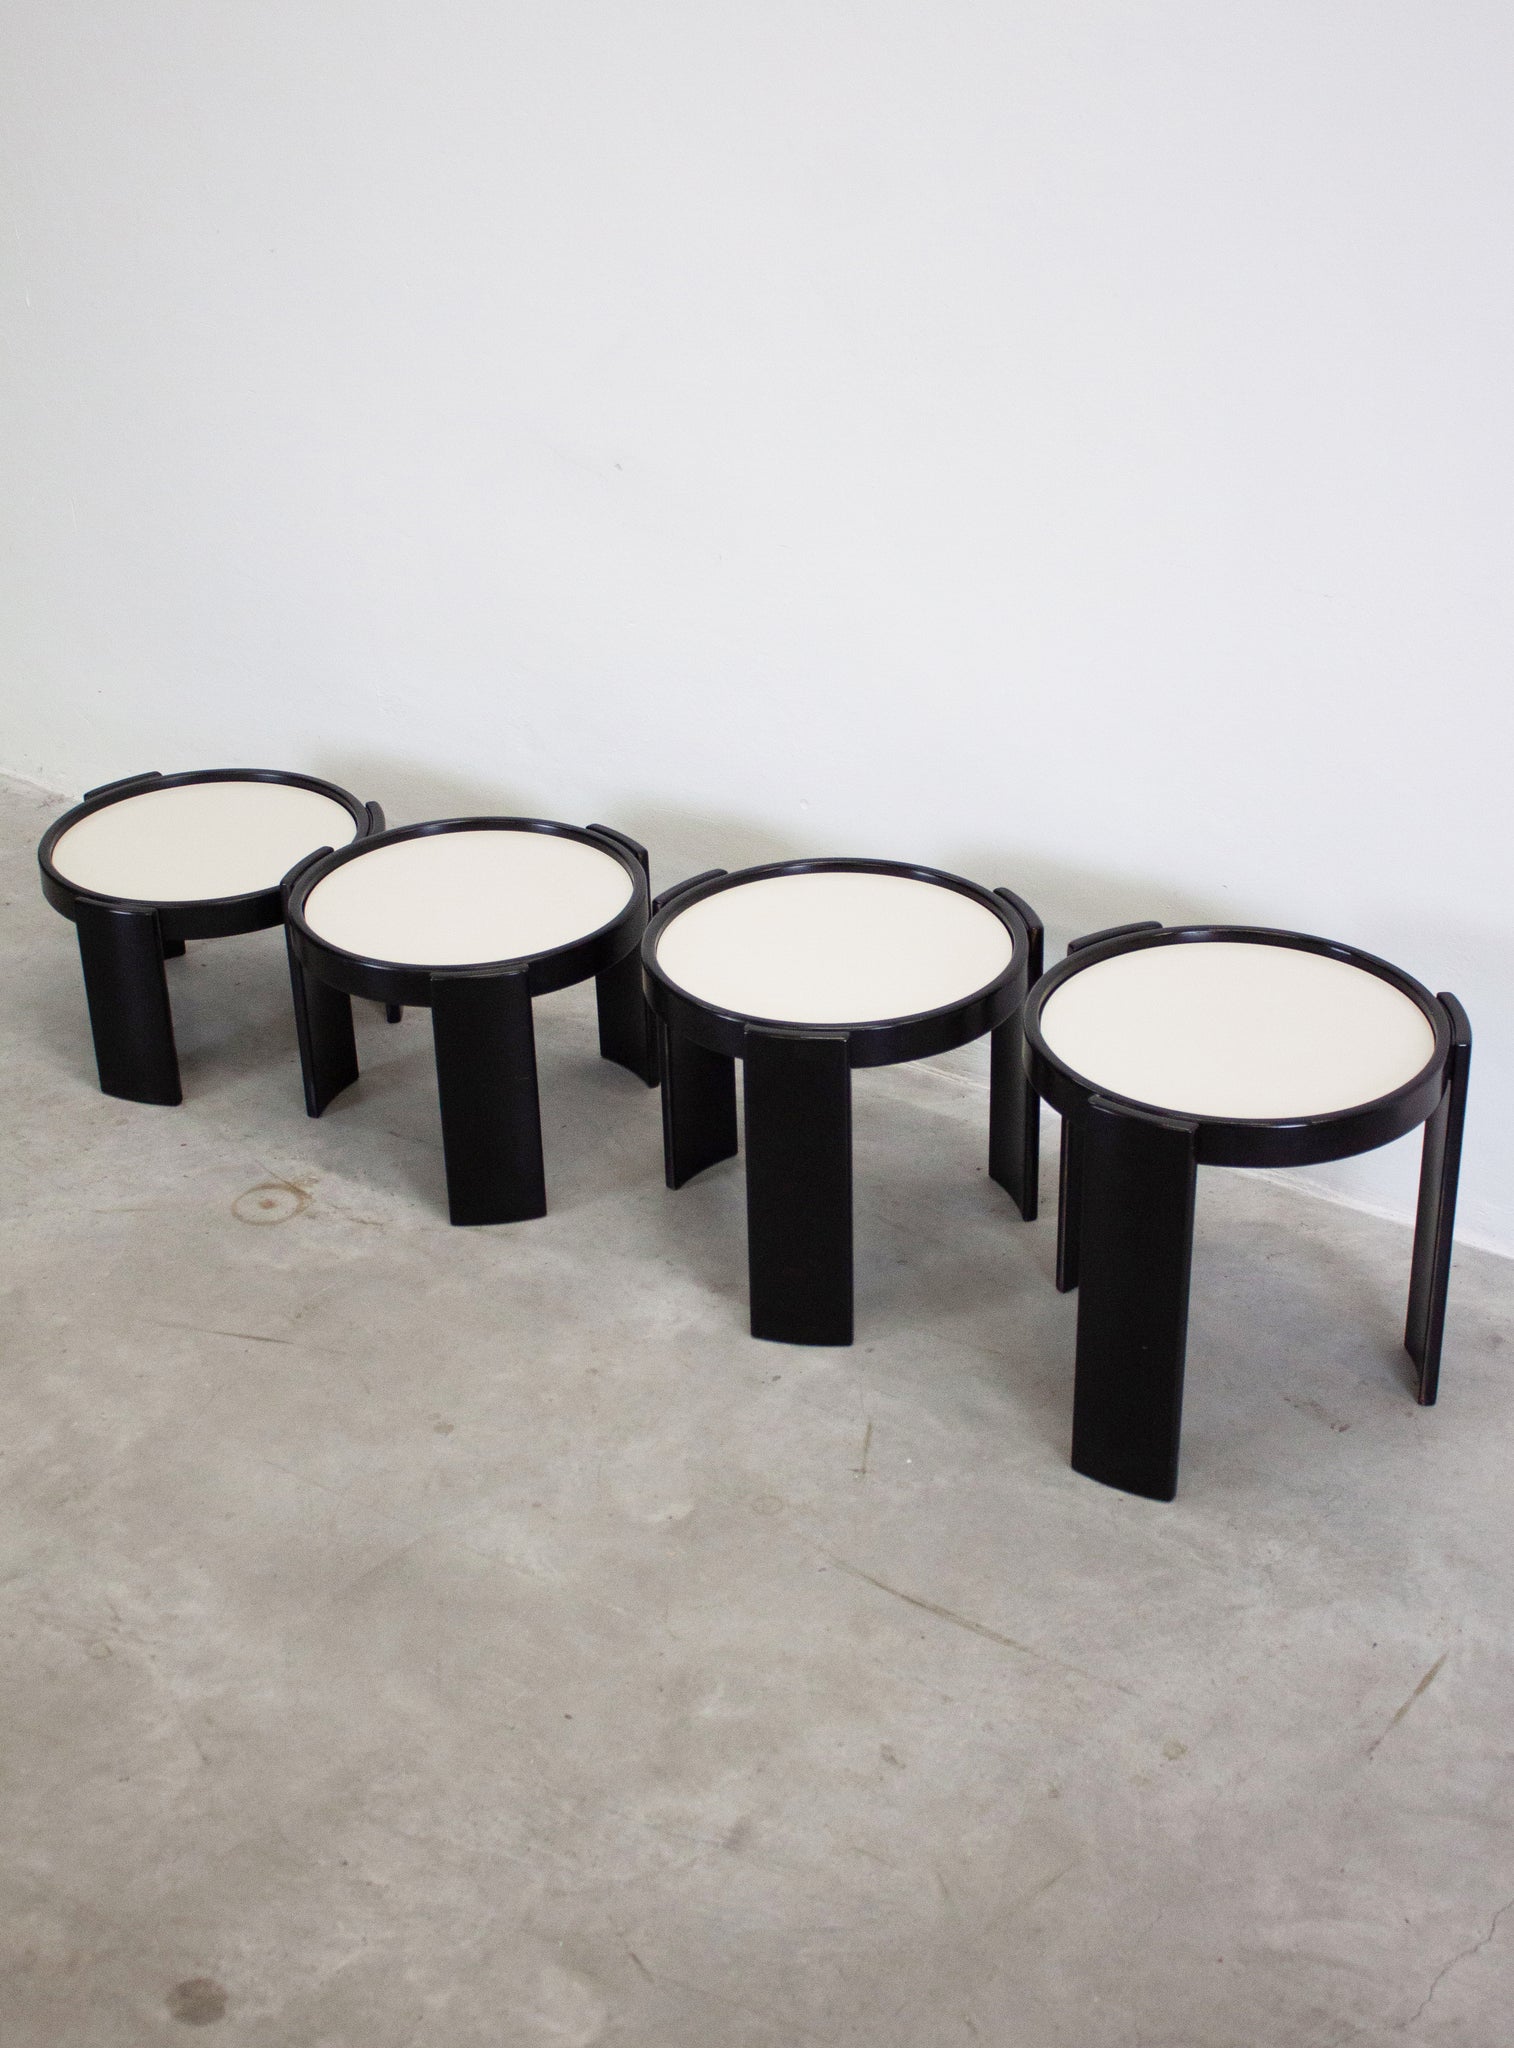 Cassina Nesting Tables by Gianfranco Frattini (Black)